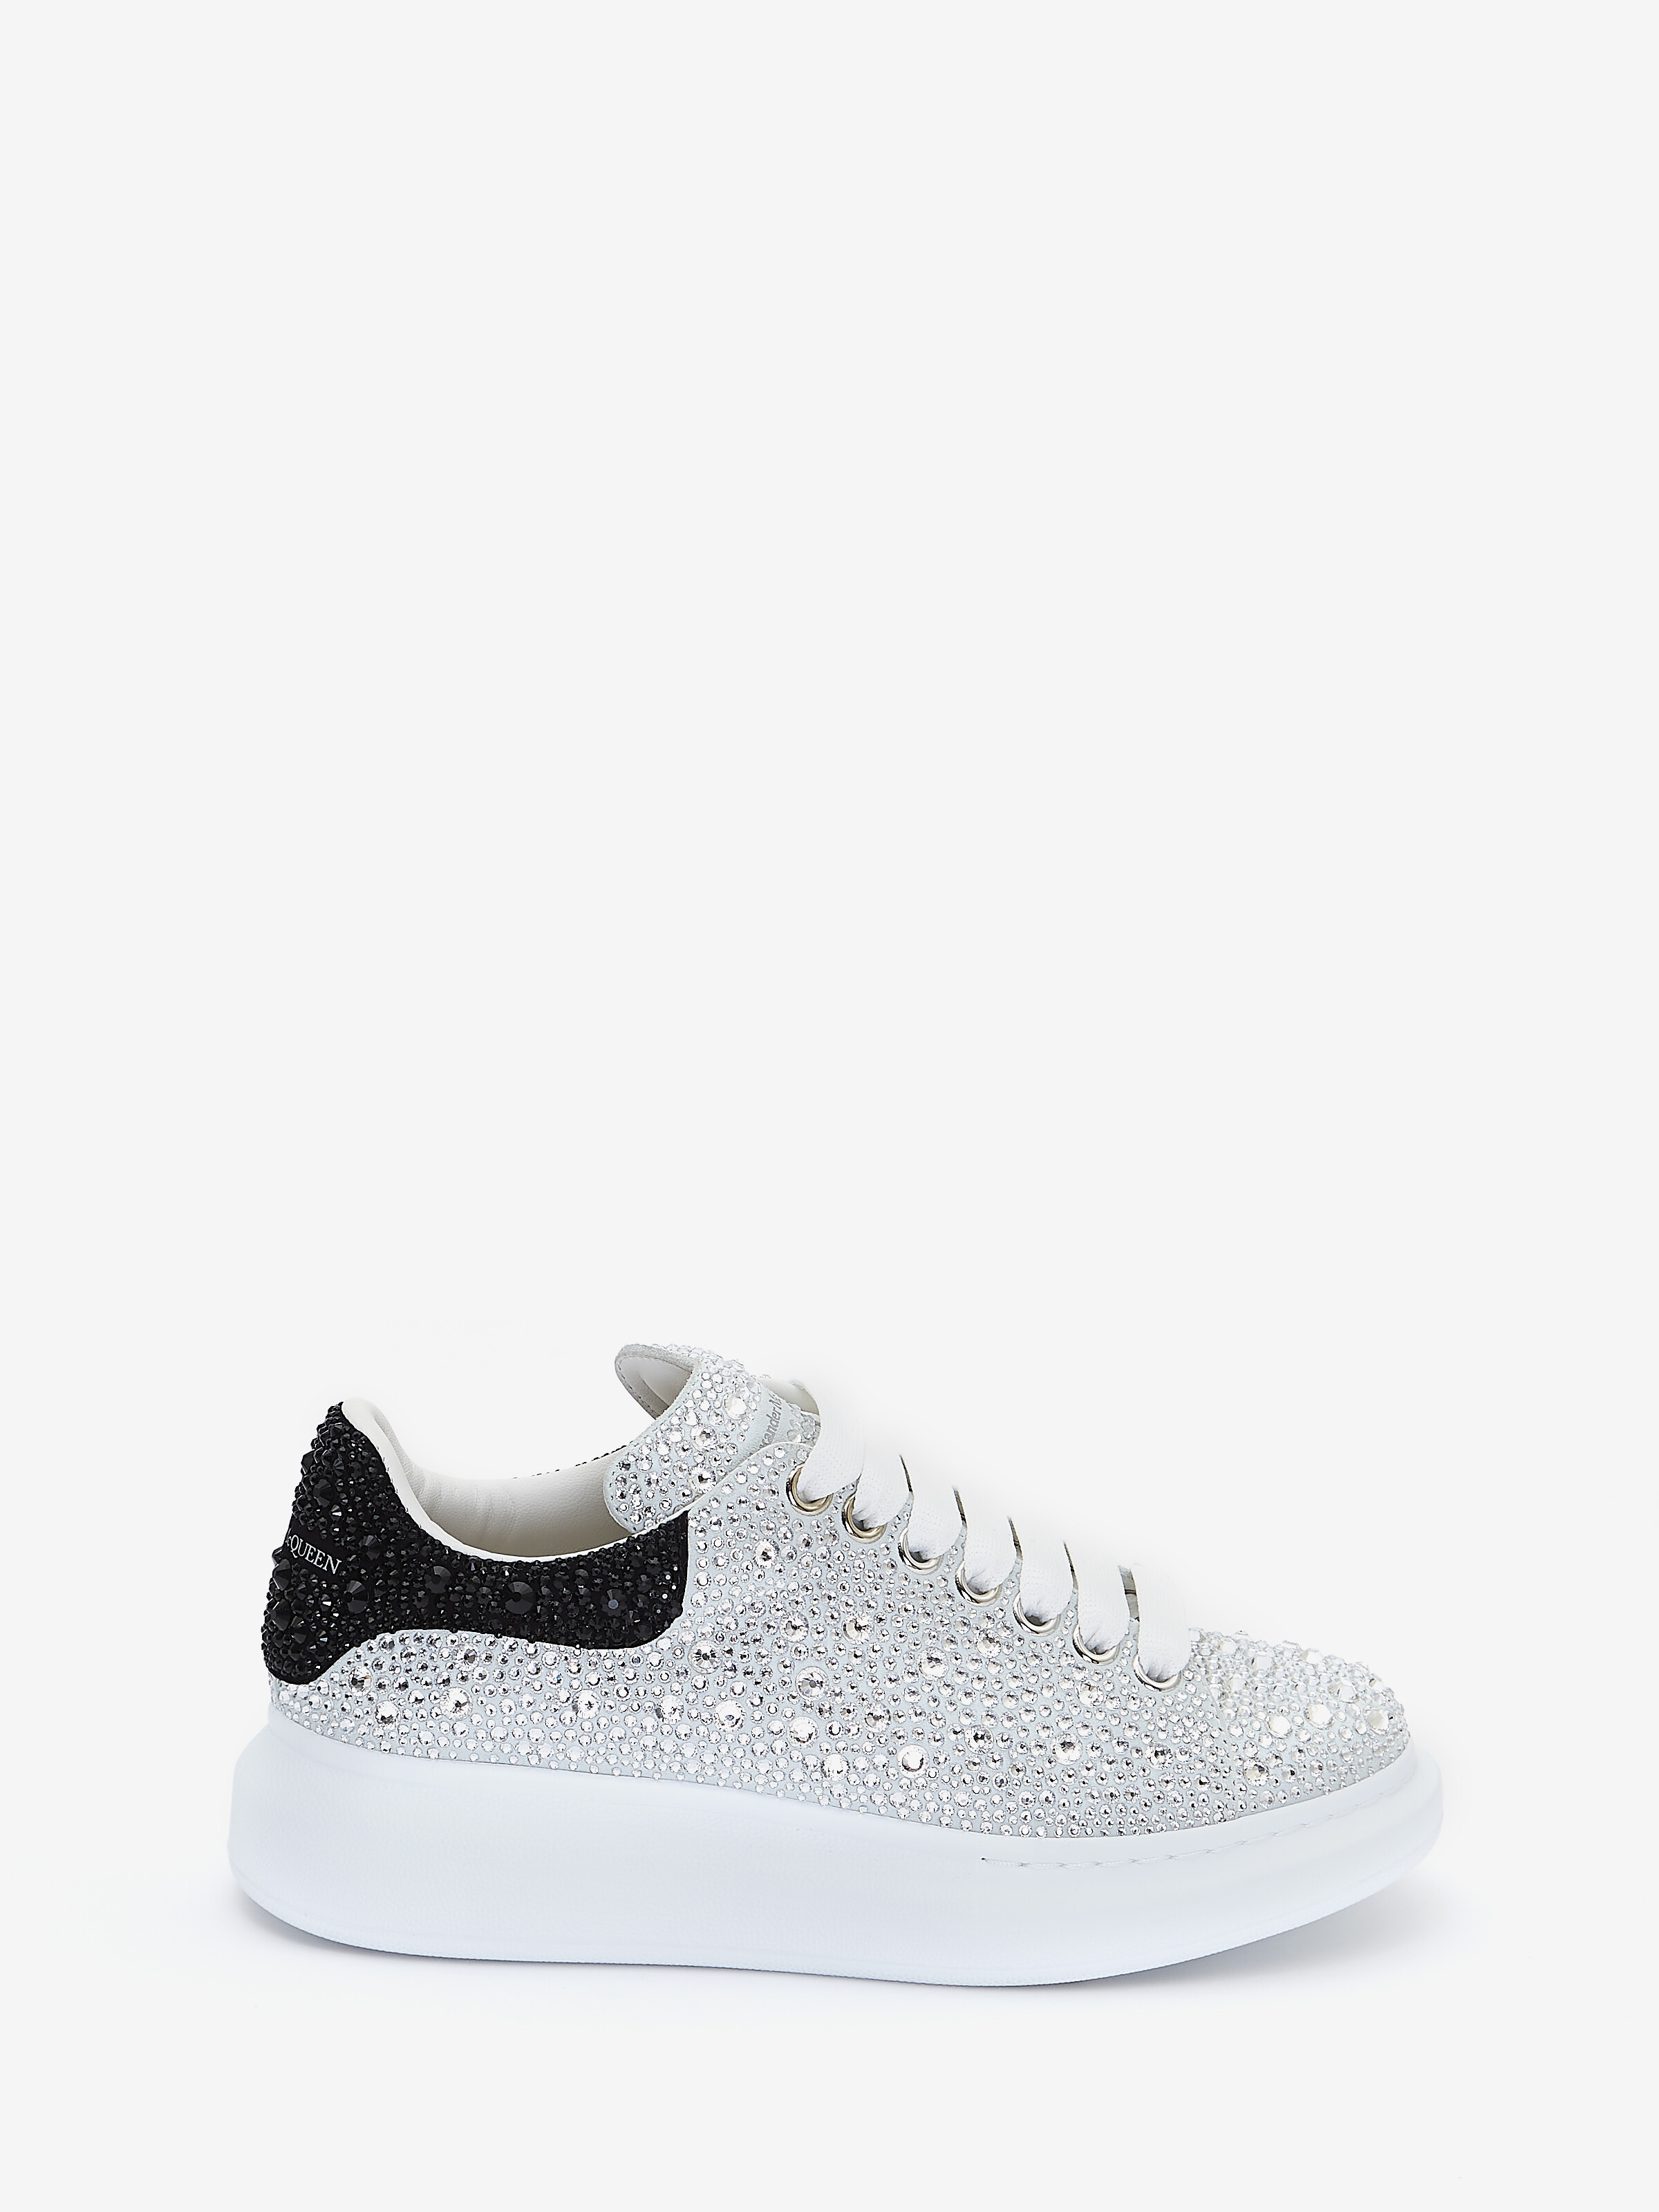 Alexander Mcqueen Oversized Sneaker In White/crystal | ModeSens